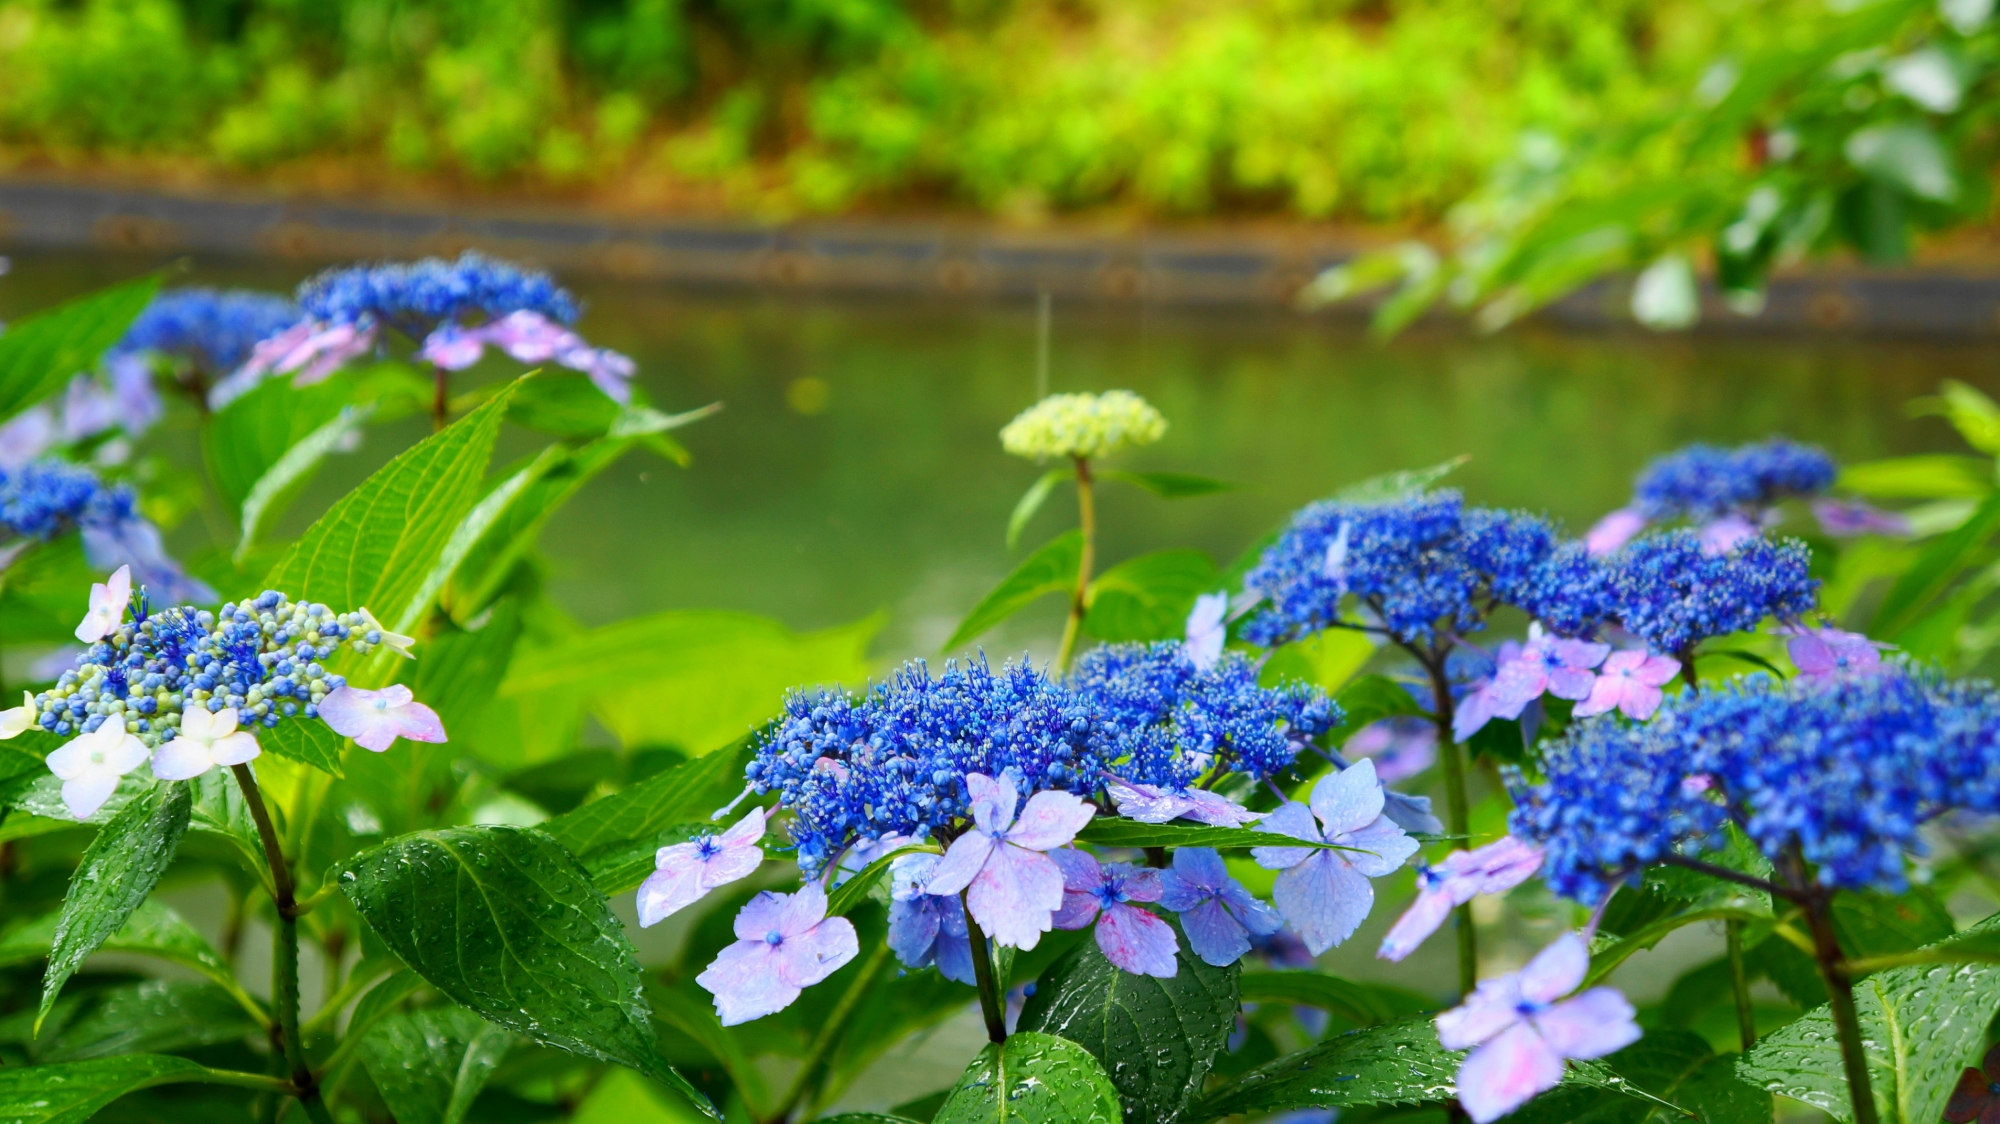 雨に潤い水辺を華やぐ宇治川派流の額紫陽花